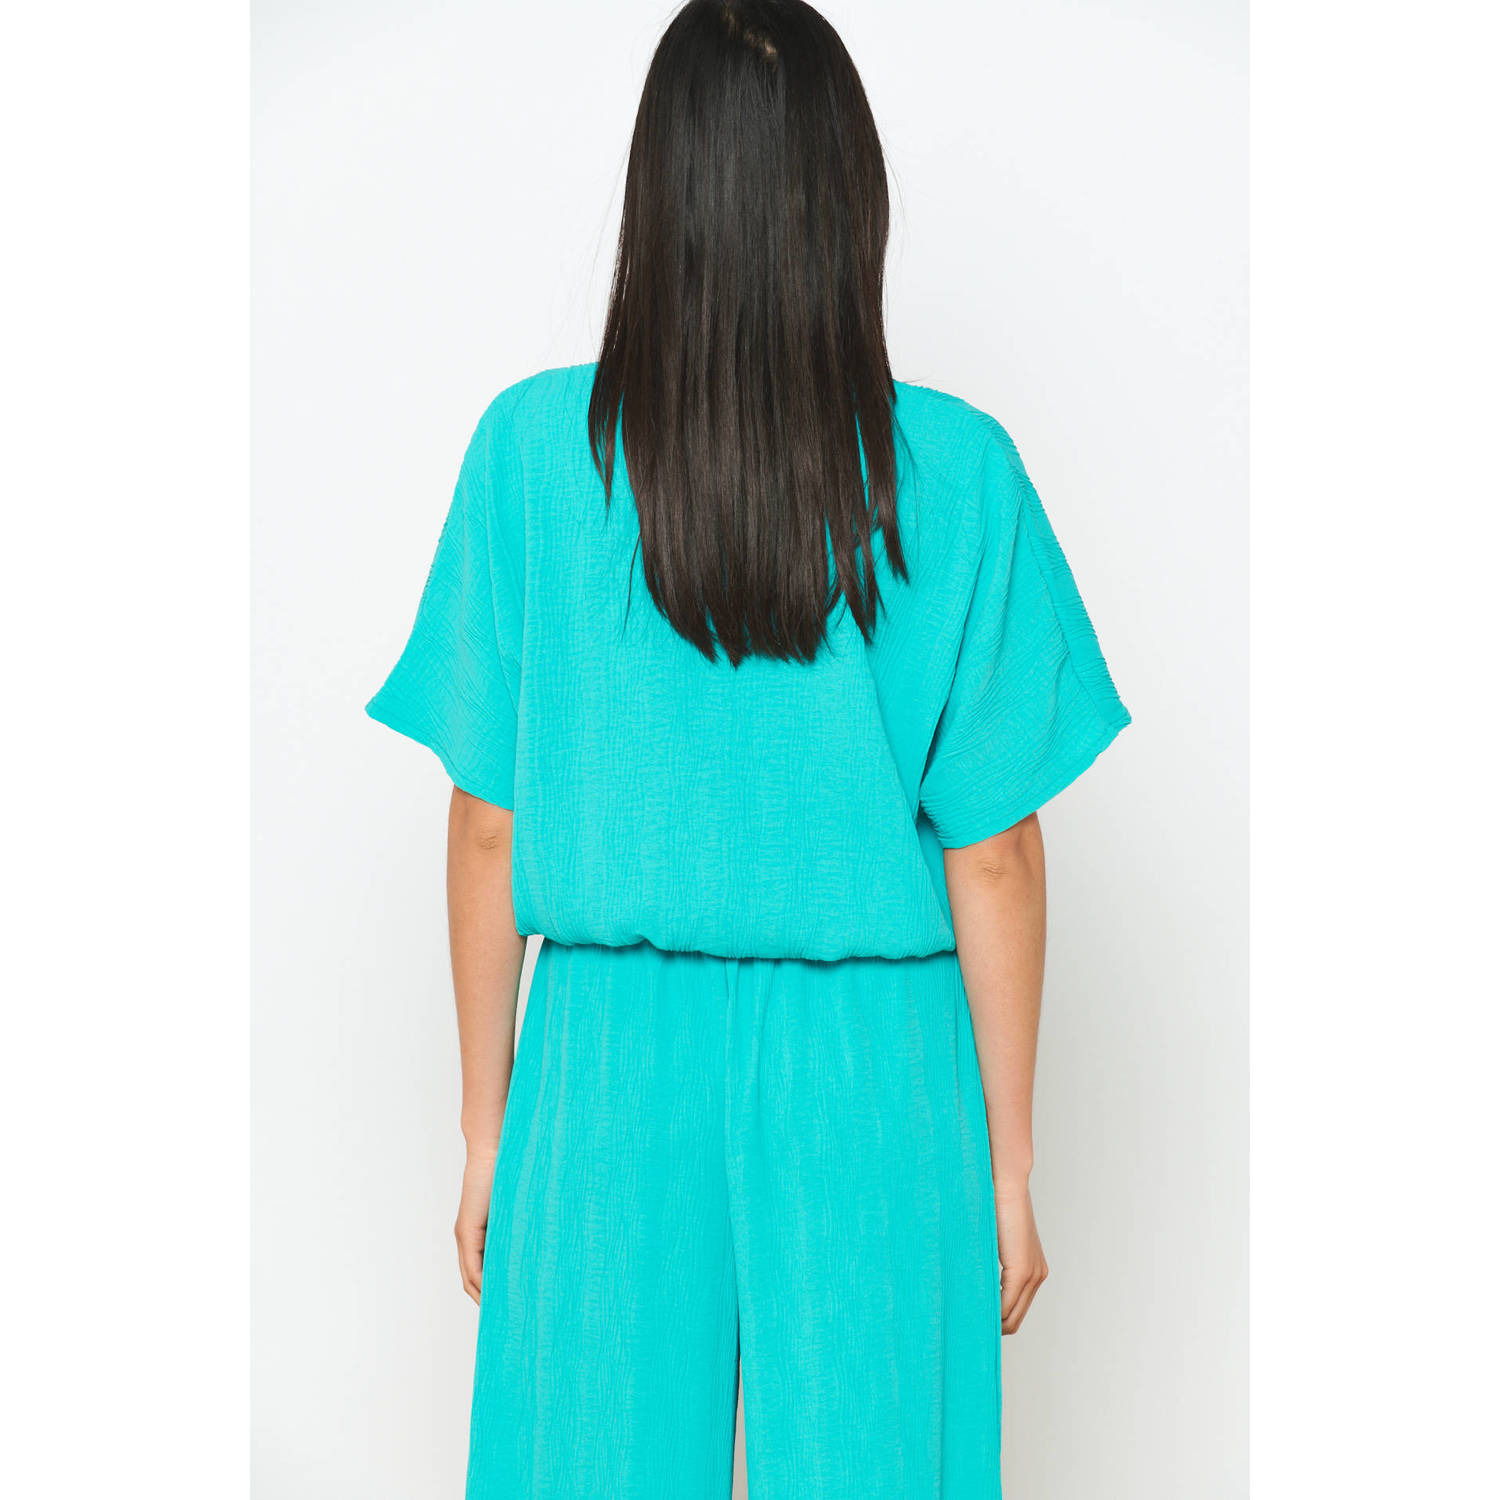 LOLALIZA blouse turquoise